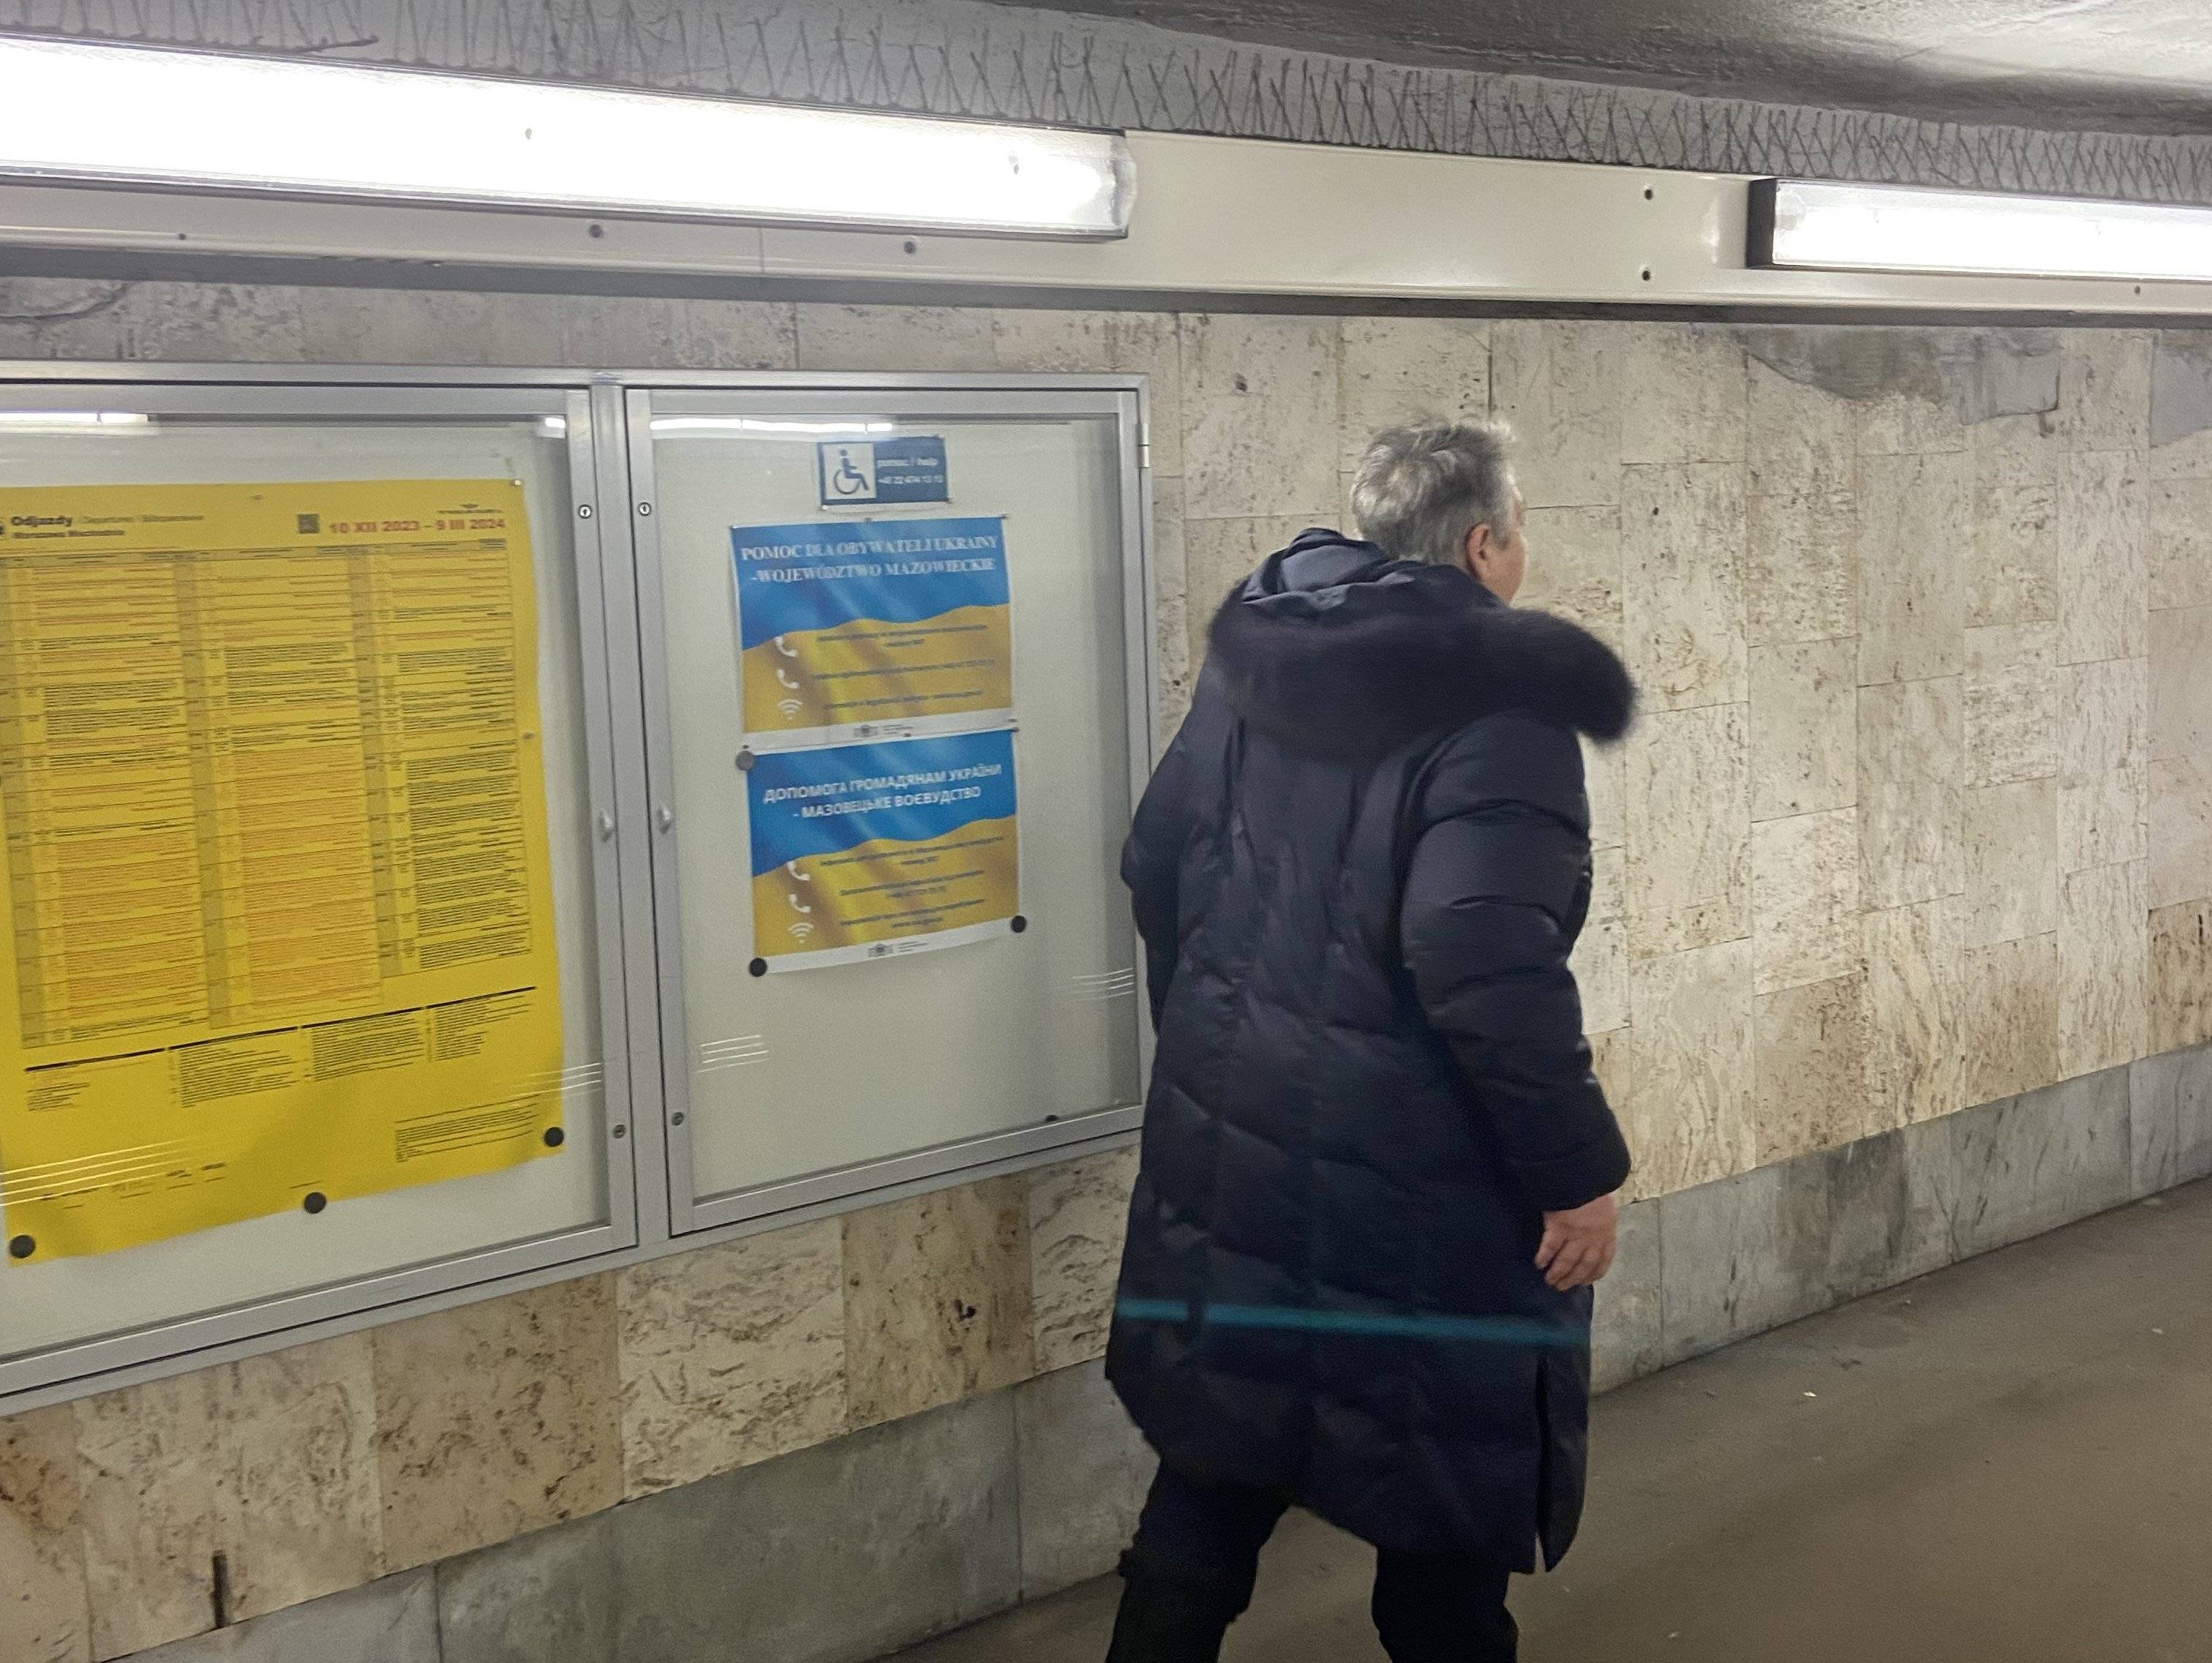 Kobieta o siwych włosach w ciemnej kurtce idzie przejściem pod peronami, na ścianie tablice informacyjne po ukraińsku